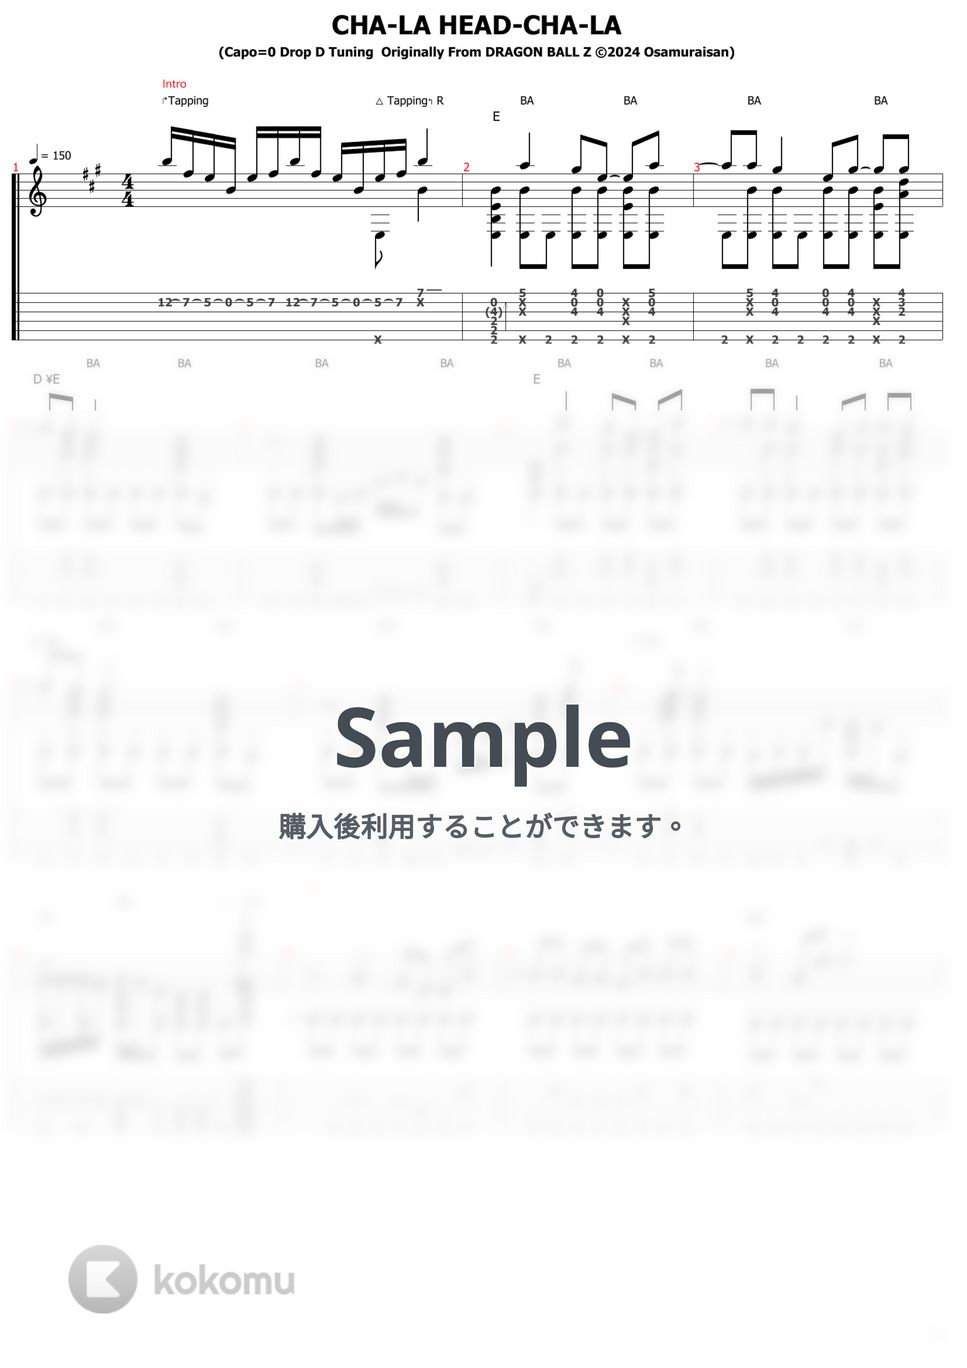 影山ヒロノブ - CHA-LA HEAD-CHA-LA (ソロギター) by おさむらいさん